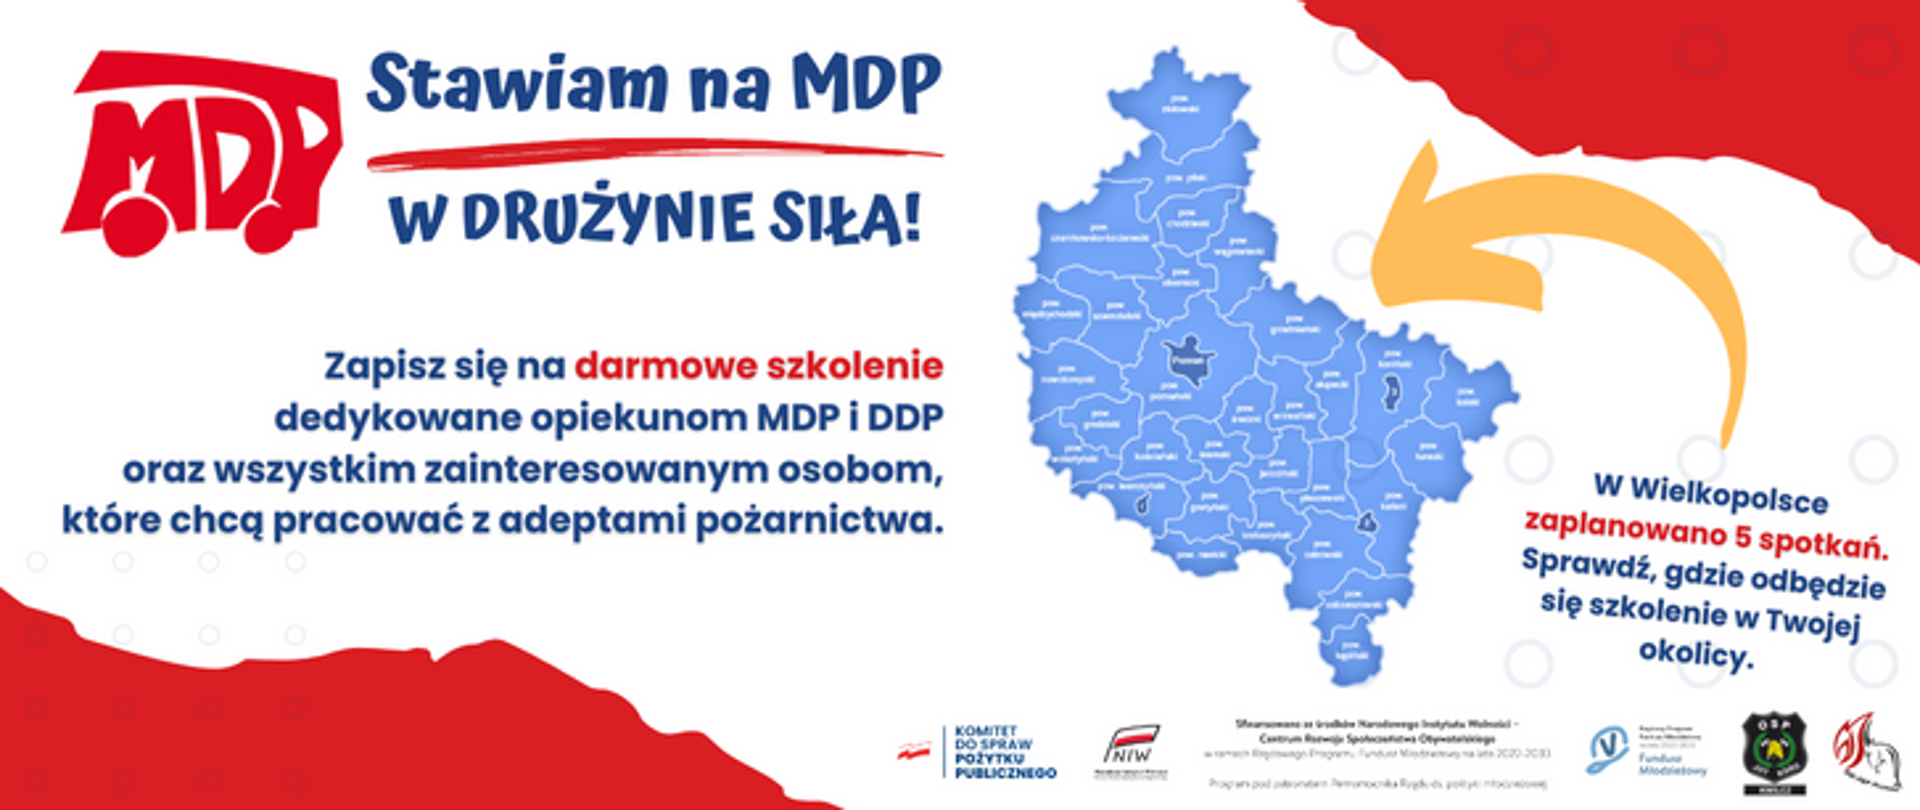 Baner przedstawiający mapę polski oraz hasła o darmowych szkoleniach dedykowanych opiekunom MDP i DDP.